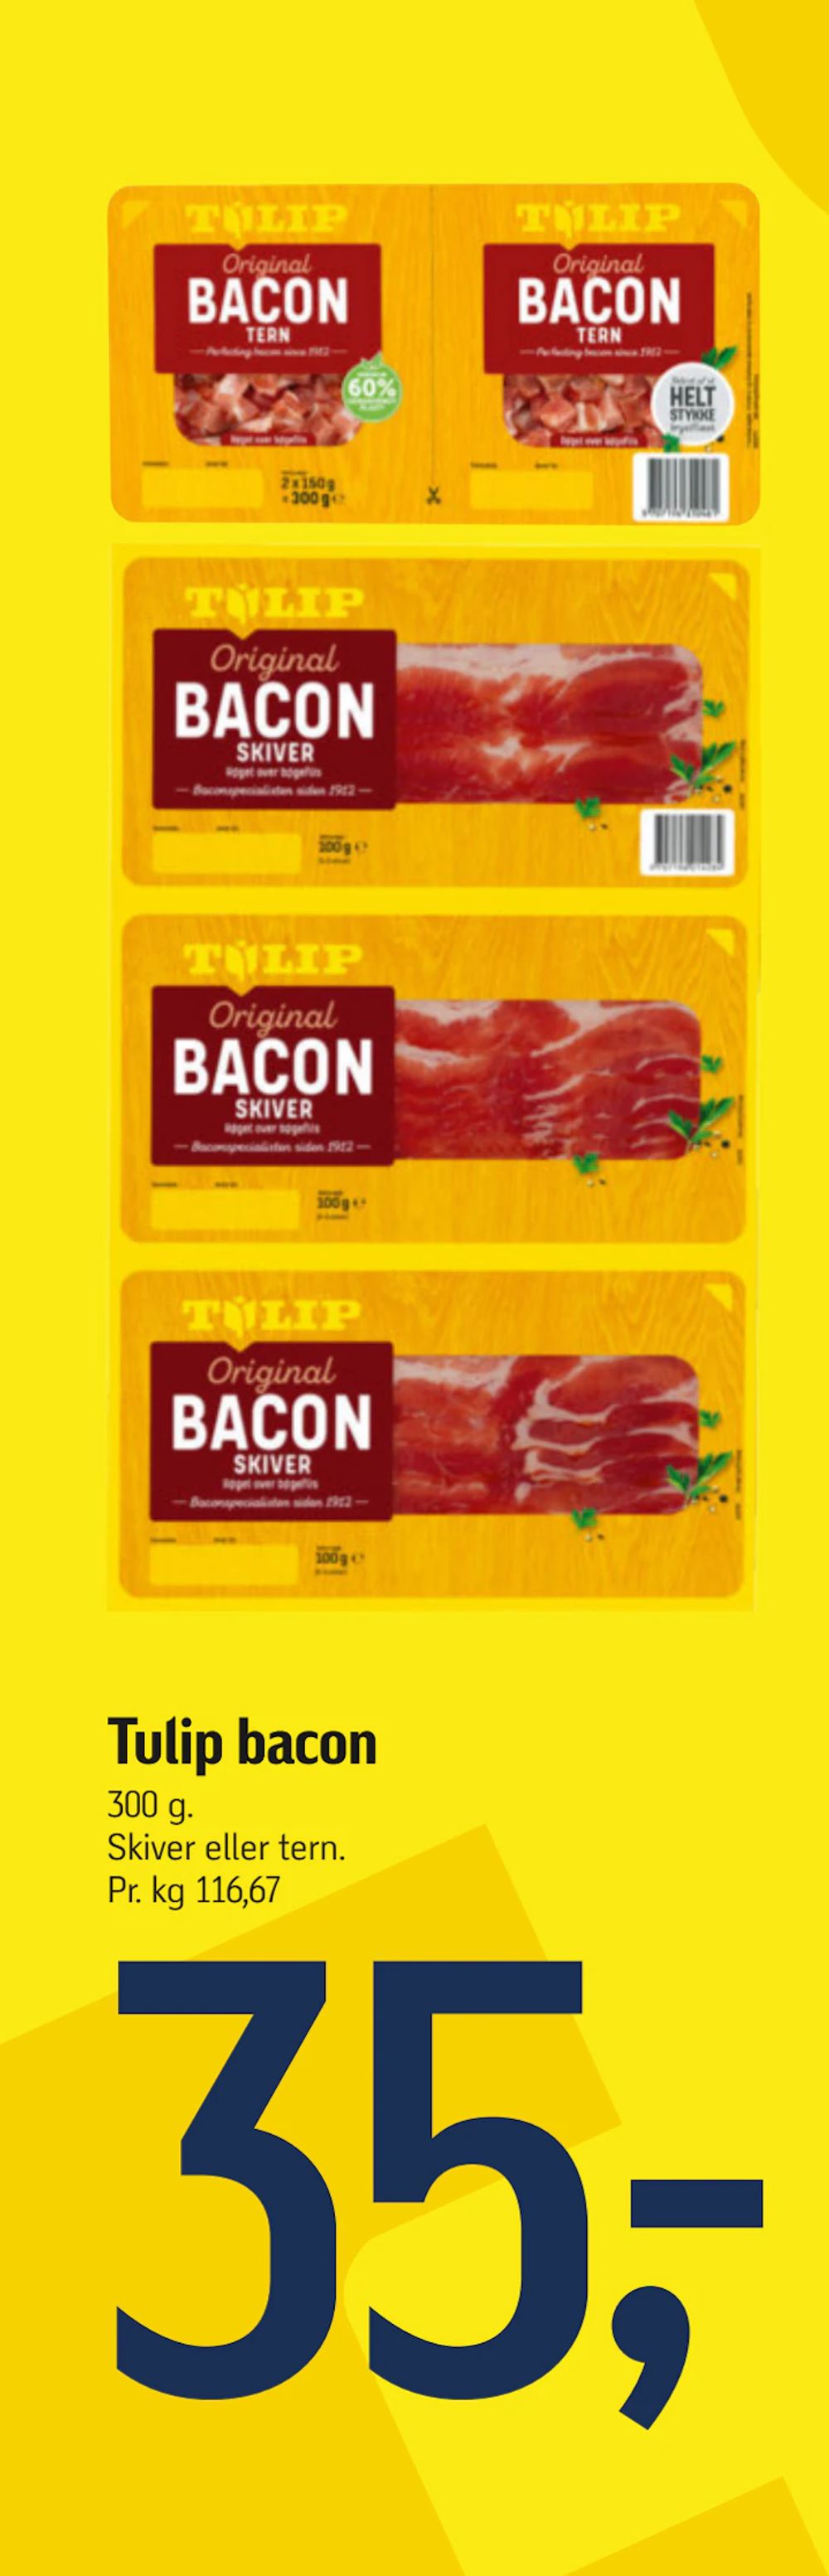 Tilbud på Tulip bacon fra føtex til 35 kr.